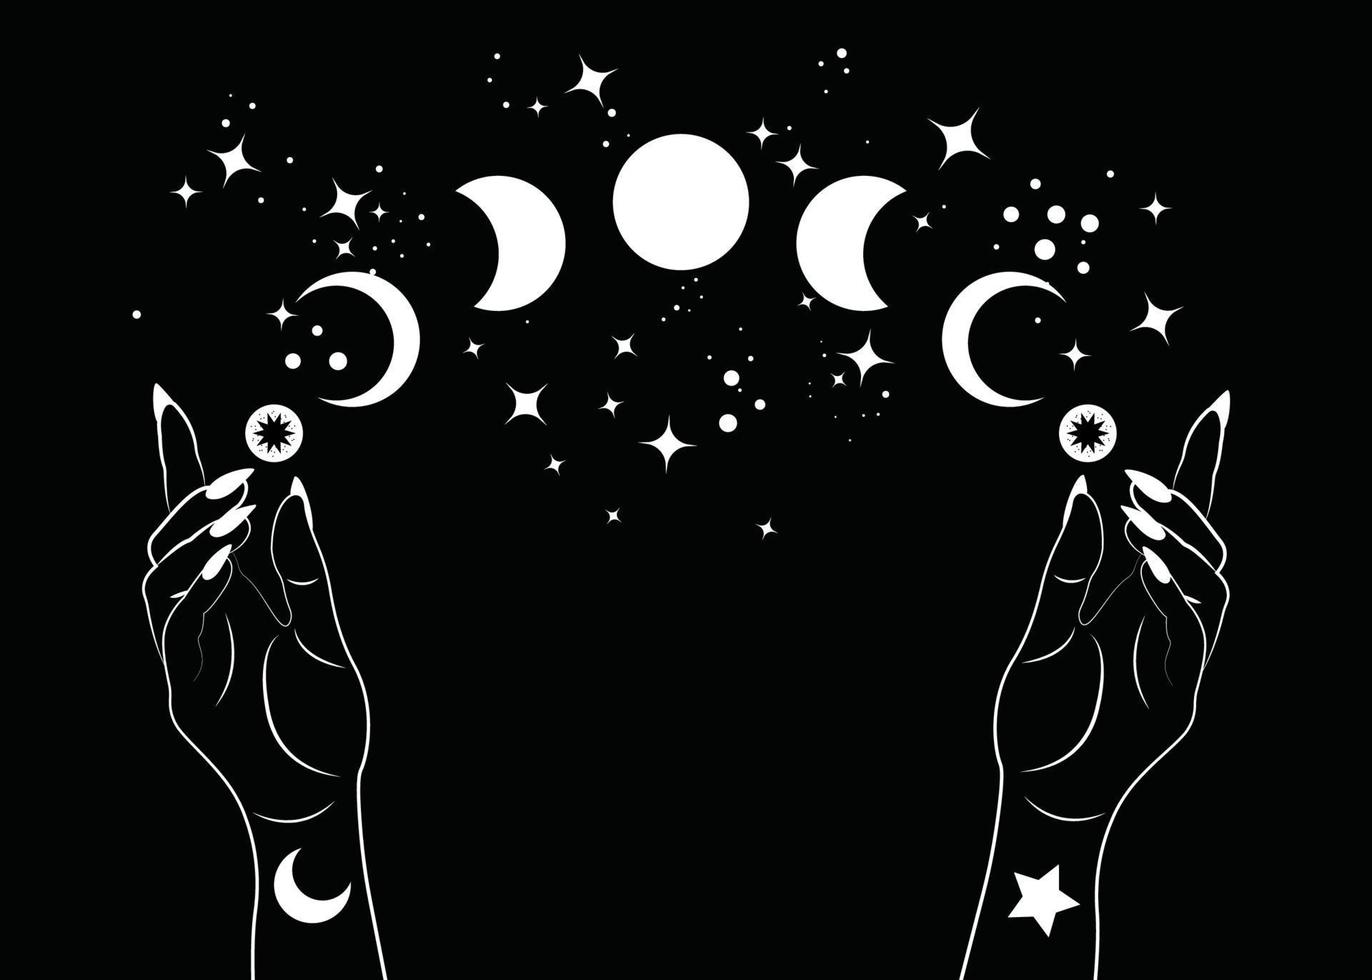 Fases de la luna mística y manos de mujer, símbolo de la diosa wicca pagana de la triple luna, espacio mágico esotérico de la alquimia, rueda sagrada del año, vector aislado sobre fondo negro